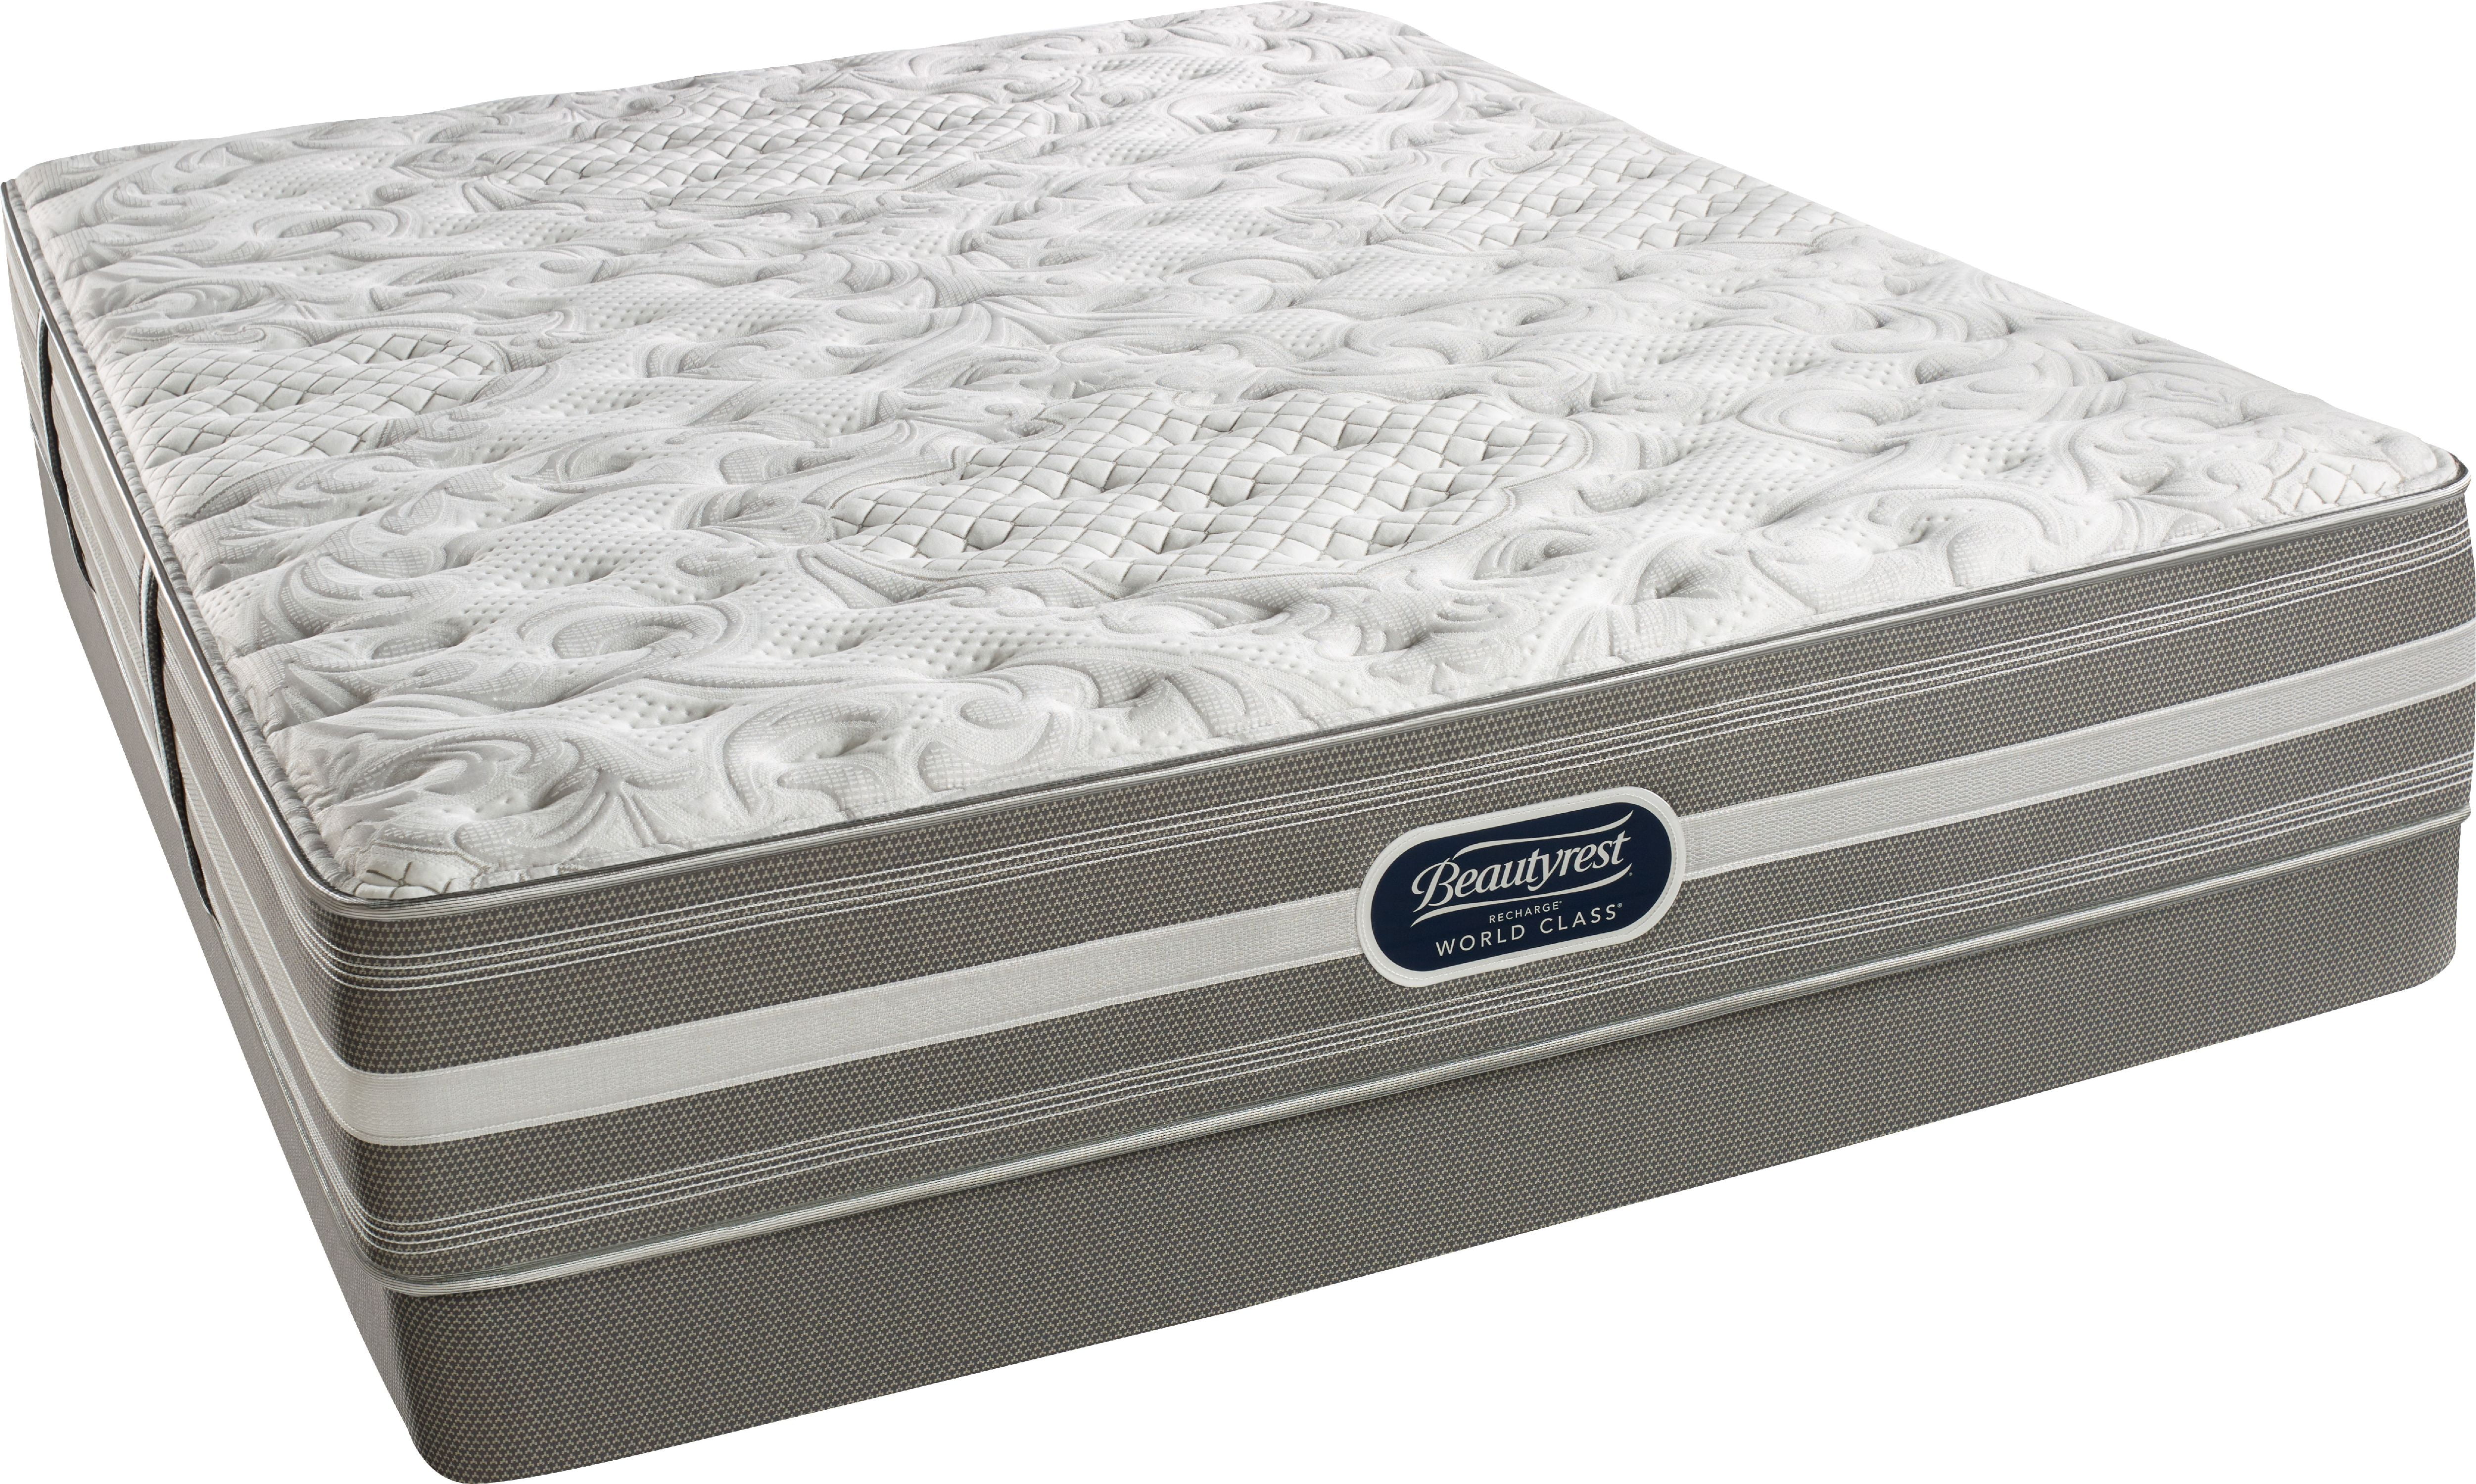 simmons beautyrest recharge world class mattress reviews